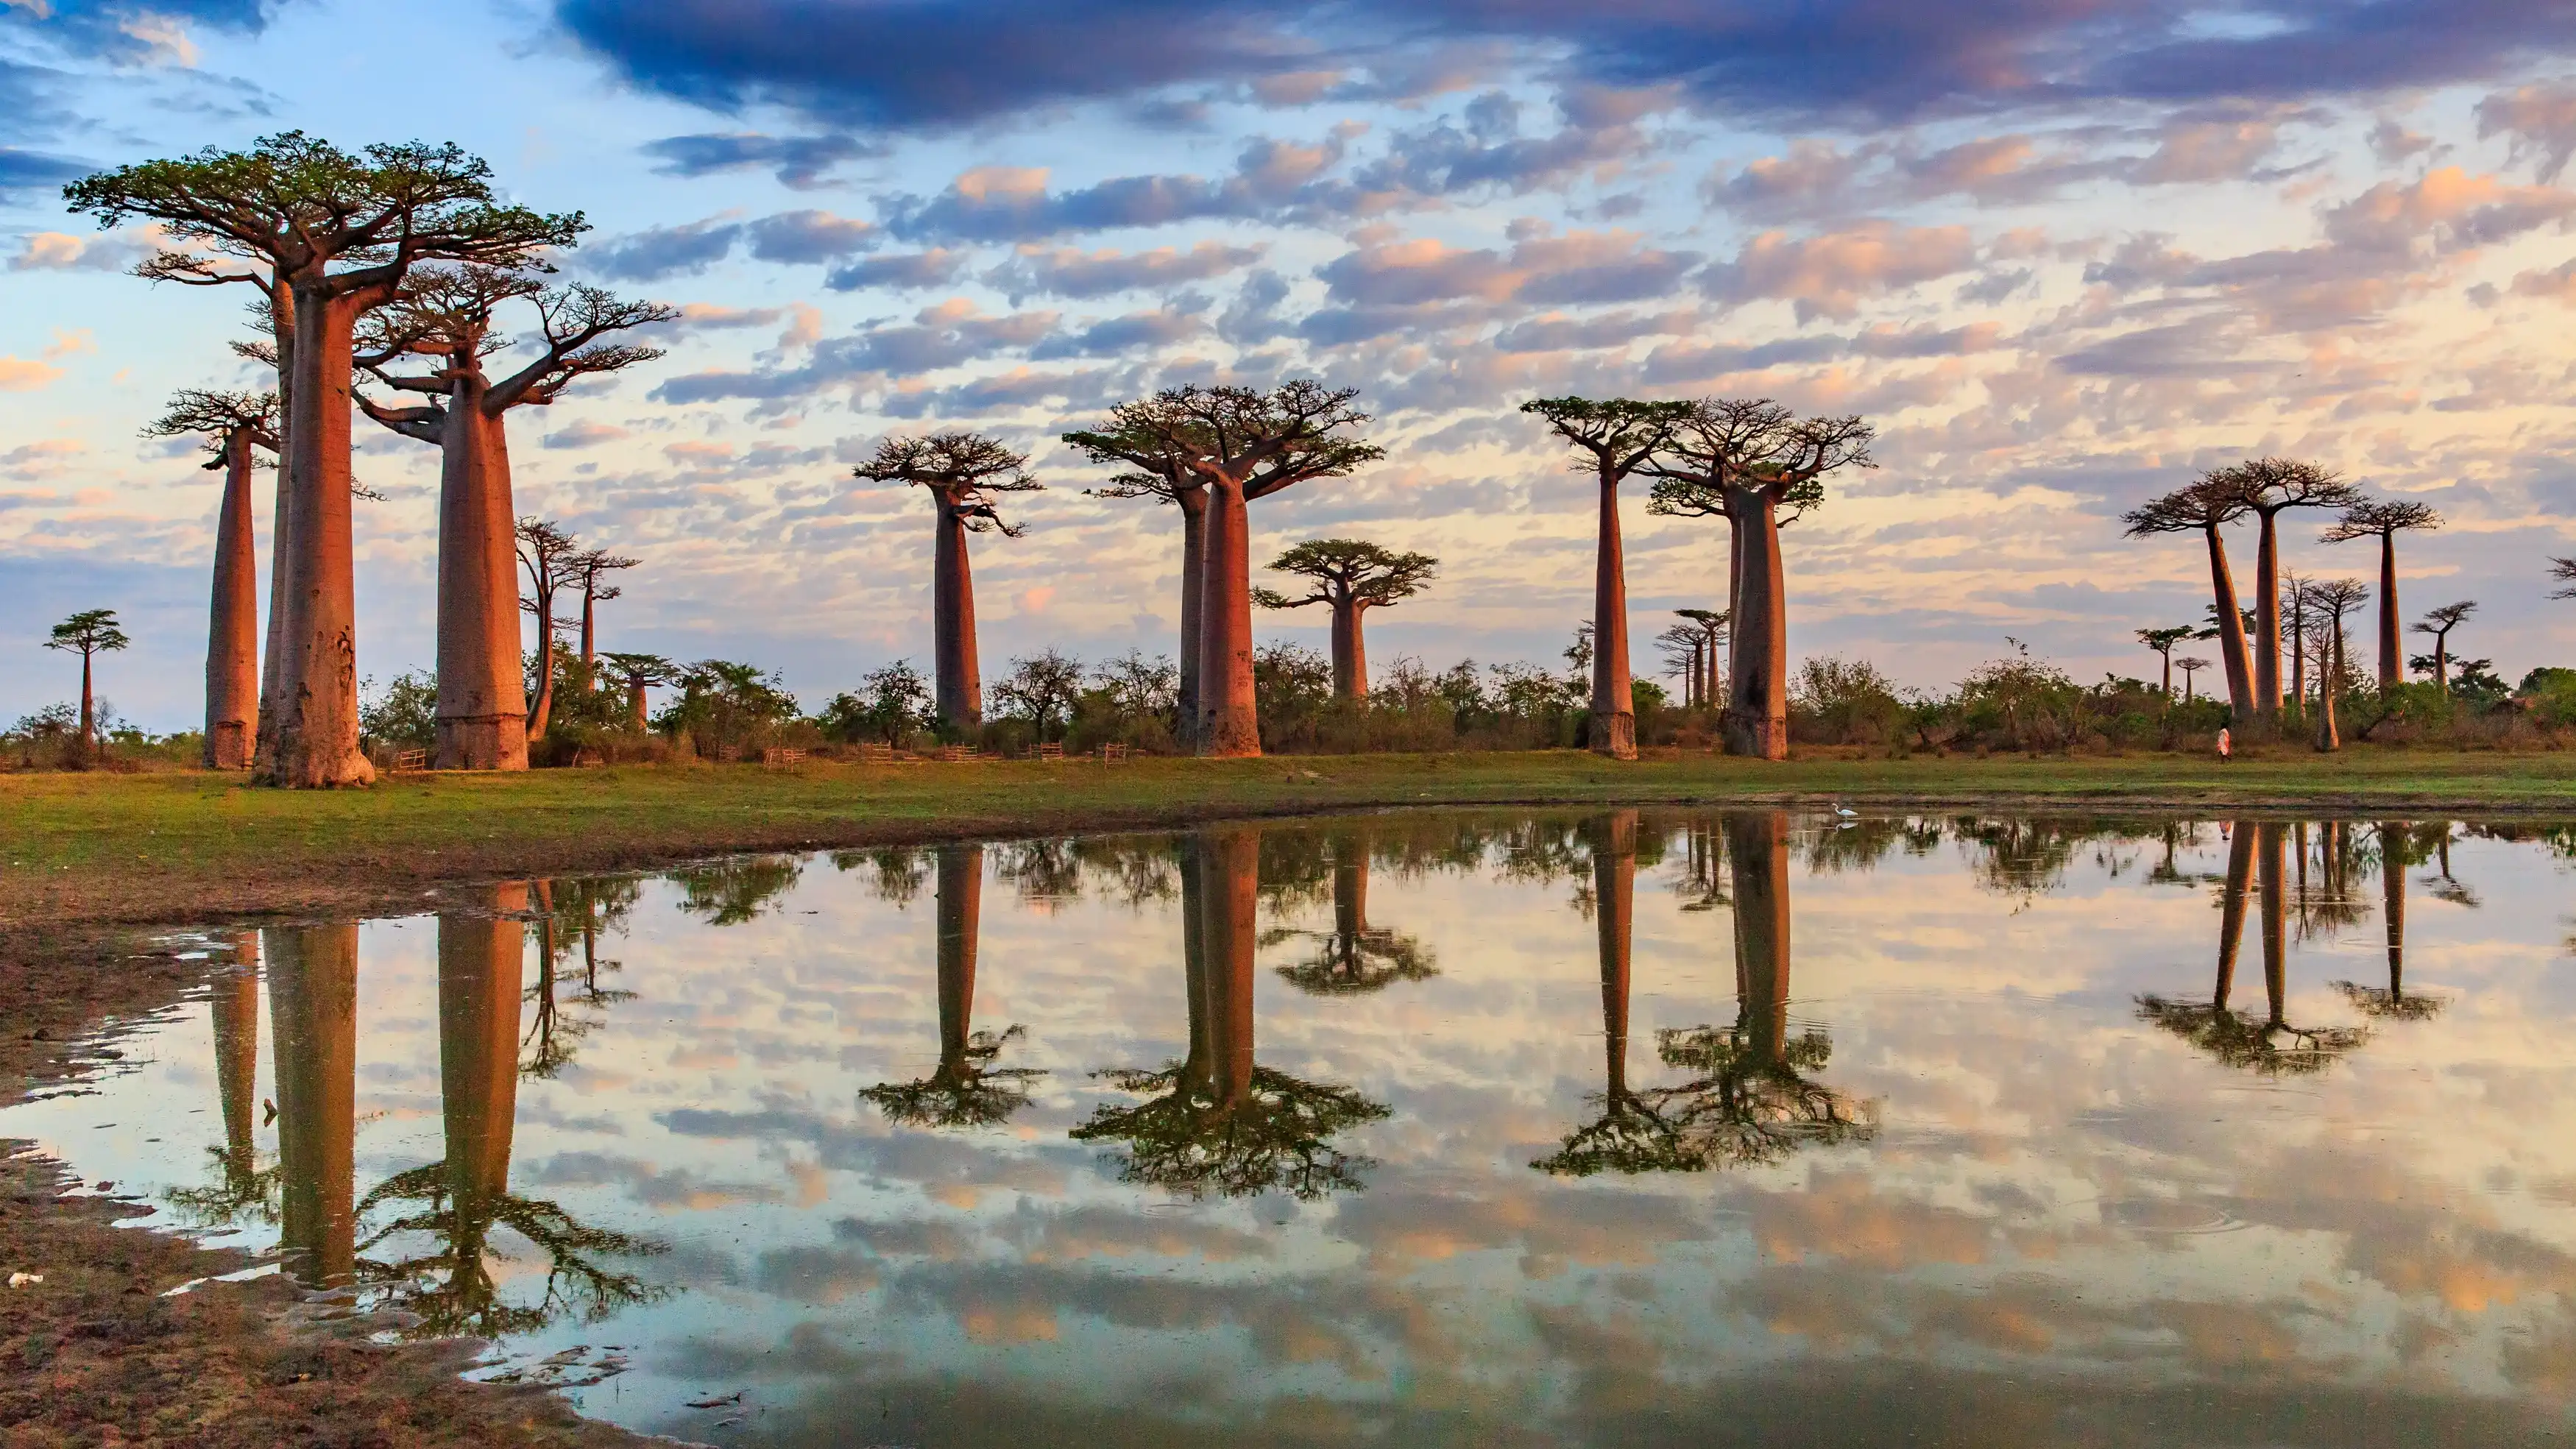 Красивые деревья баобаб на закате на проспекте баобабов в Мадагаскаре